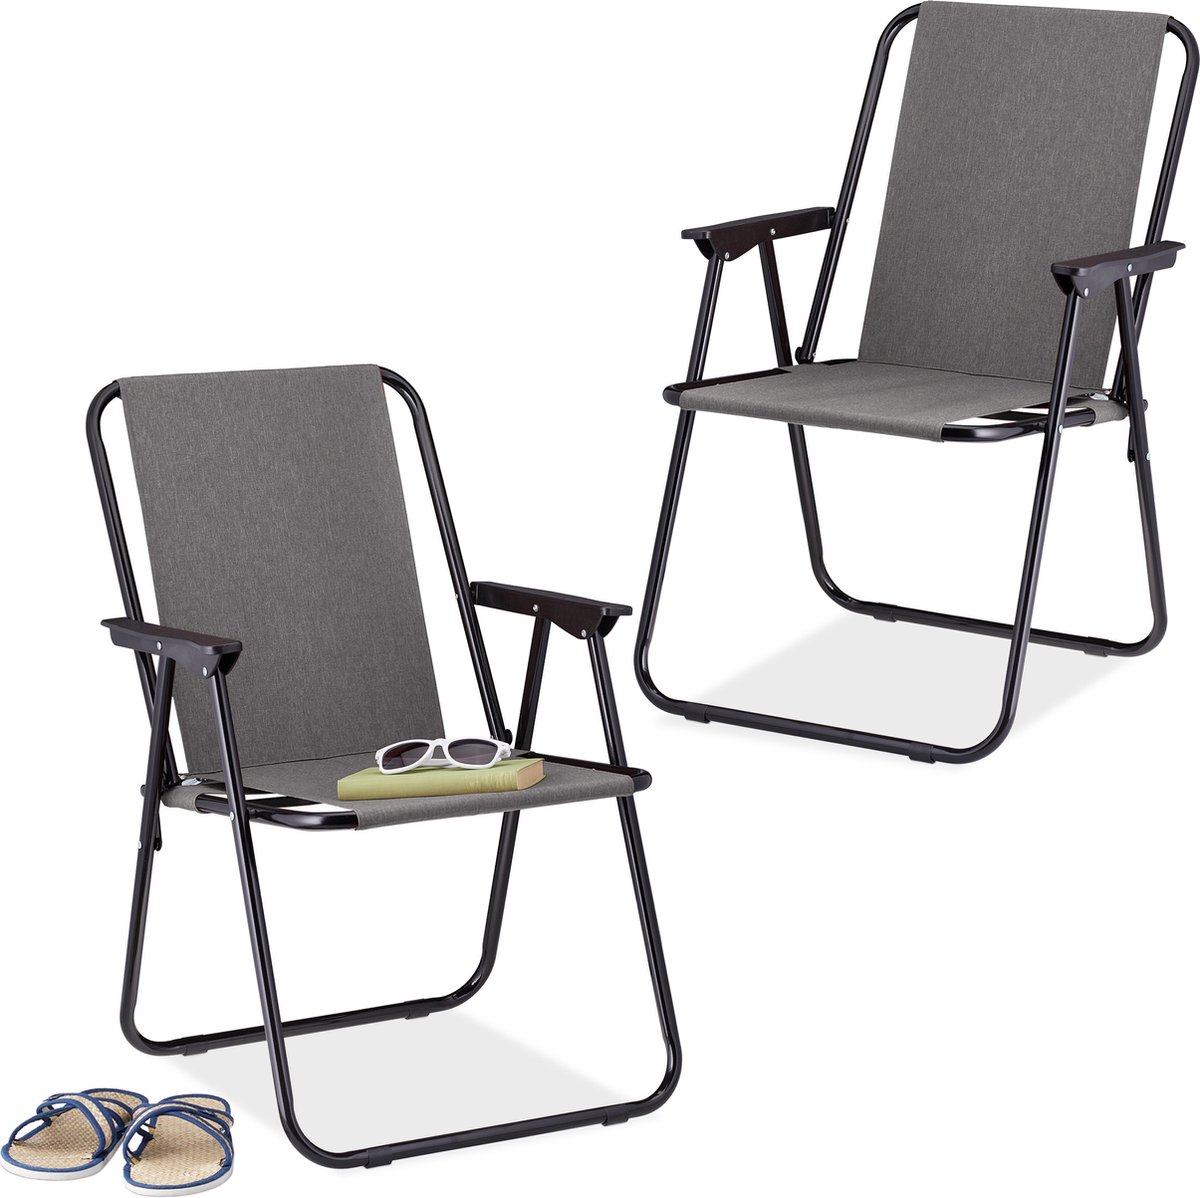 Relaxdays campingstoel inklapbaar set van 2 - klapstoel 100 kg - visstoel met armleuningen - grijs